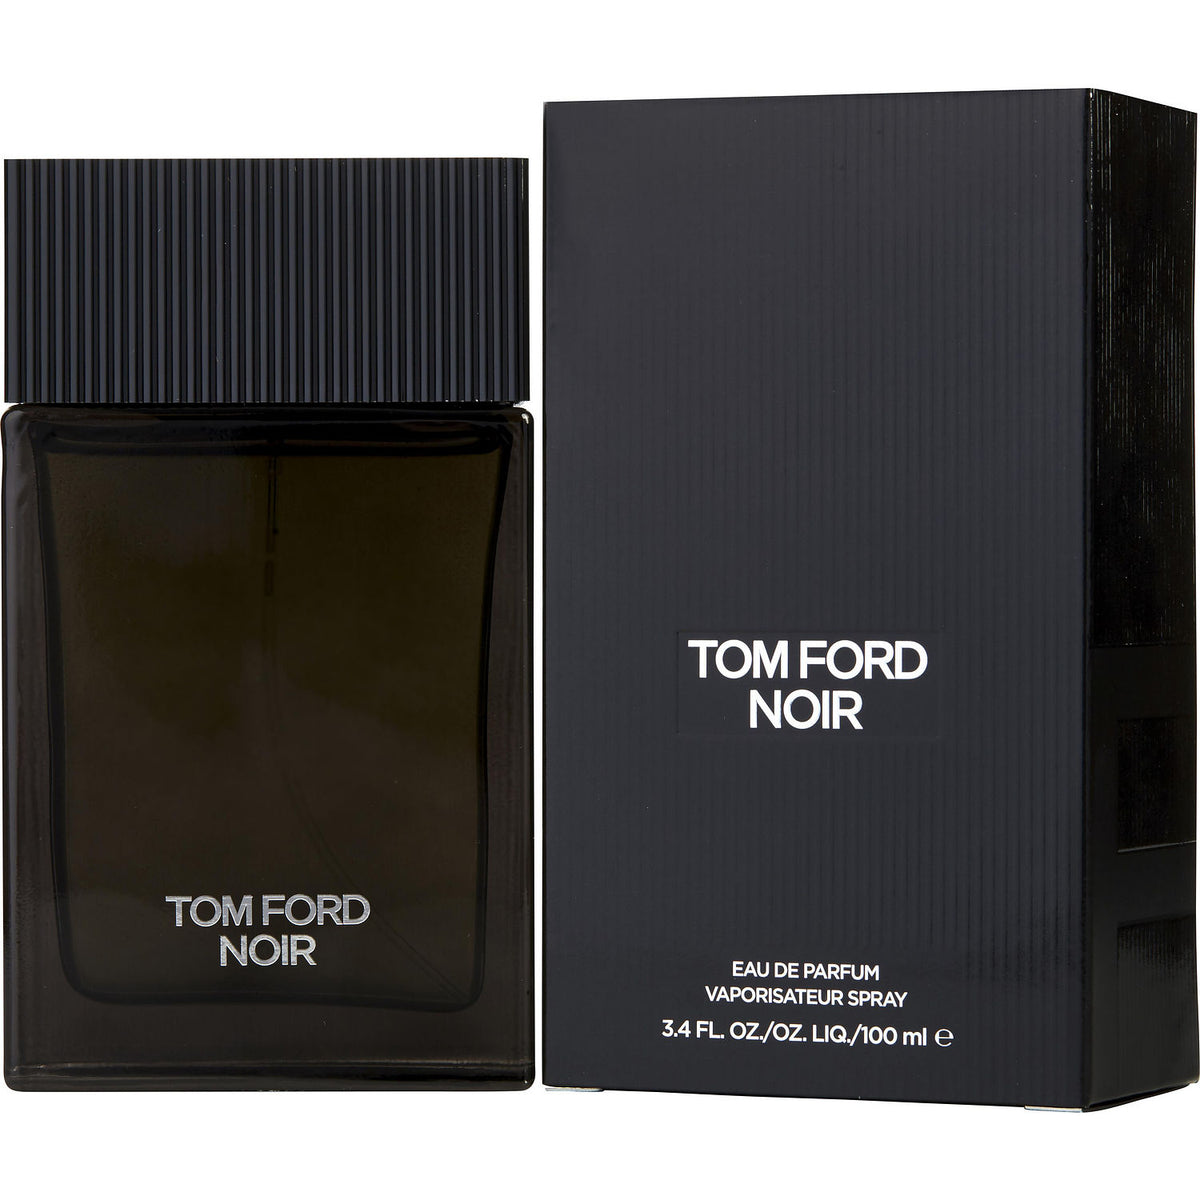 Noir by Tom Ford Fragrance Samples | DecantX | Eau de Parfum Scent ...